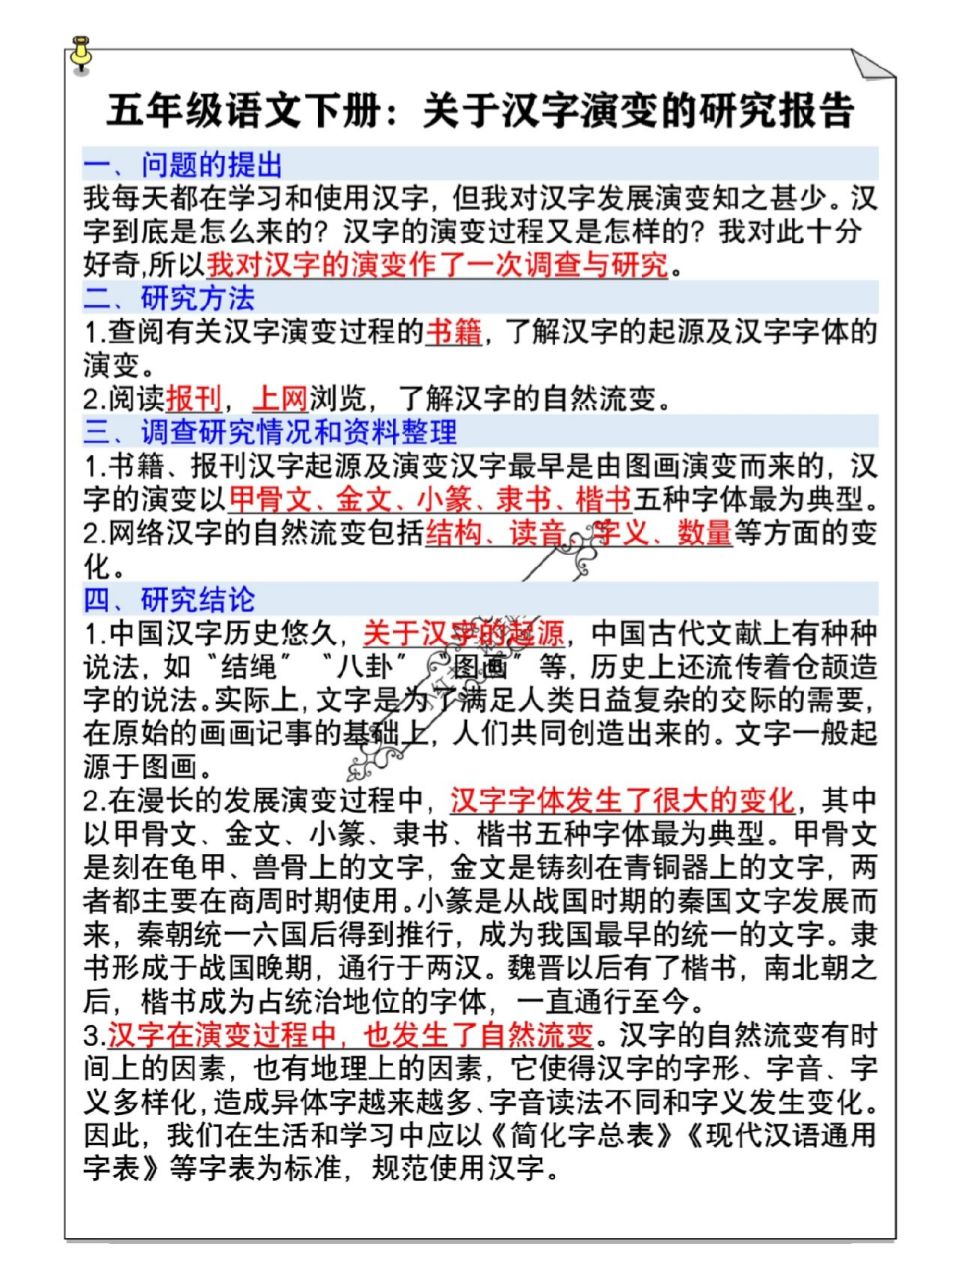 五年级语文下册关于汉字演变的研究报告 五年级语文下册关于汉字演变